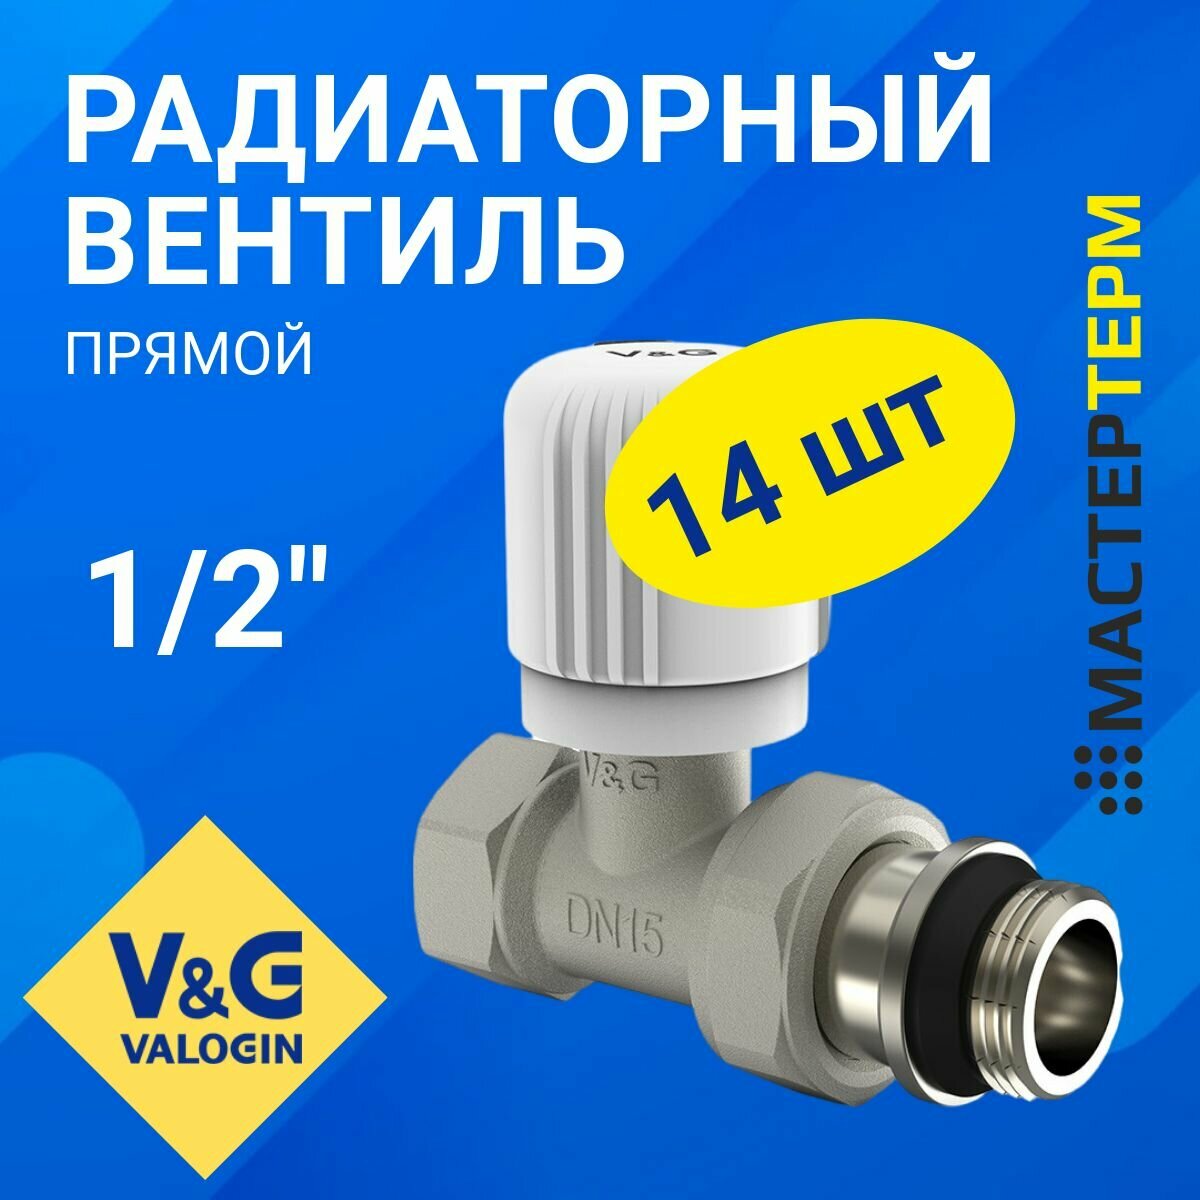 Радиаторный вентиль ручной регулировки прямой V&G VALOGIN 1/2" (VG-601101) Упаковка 14 штук